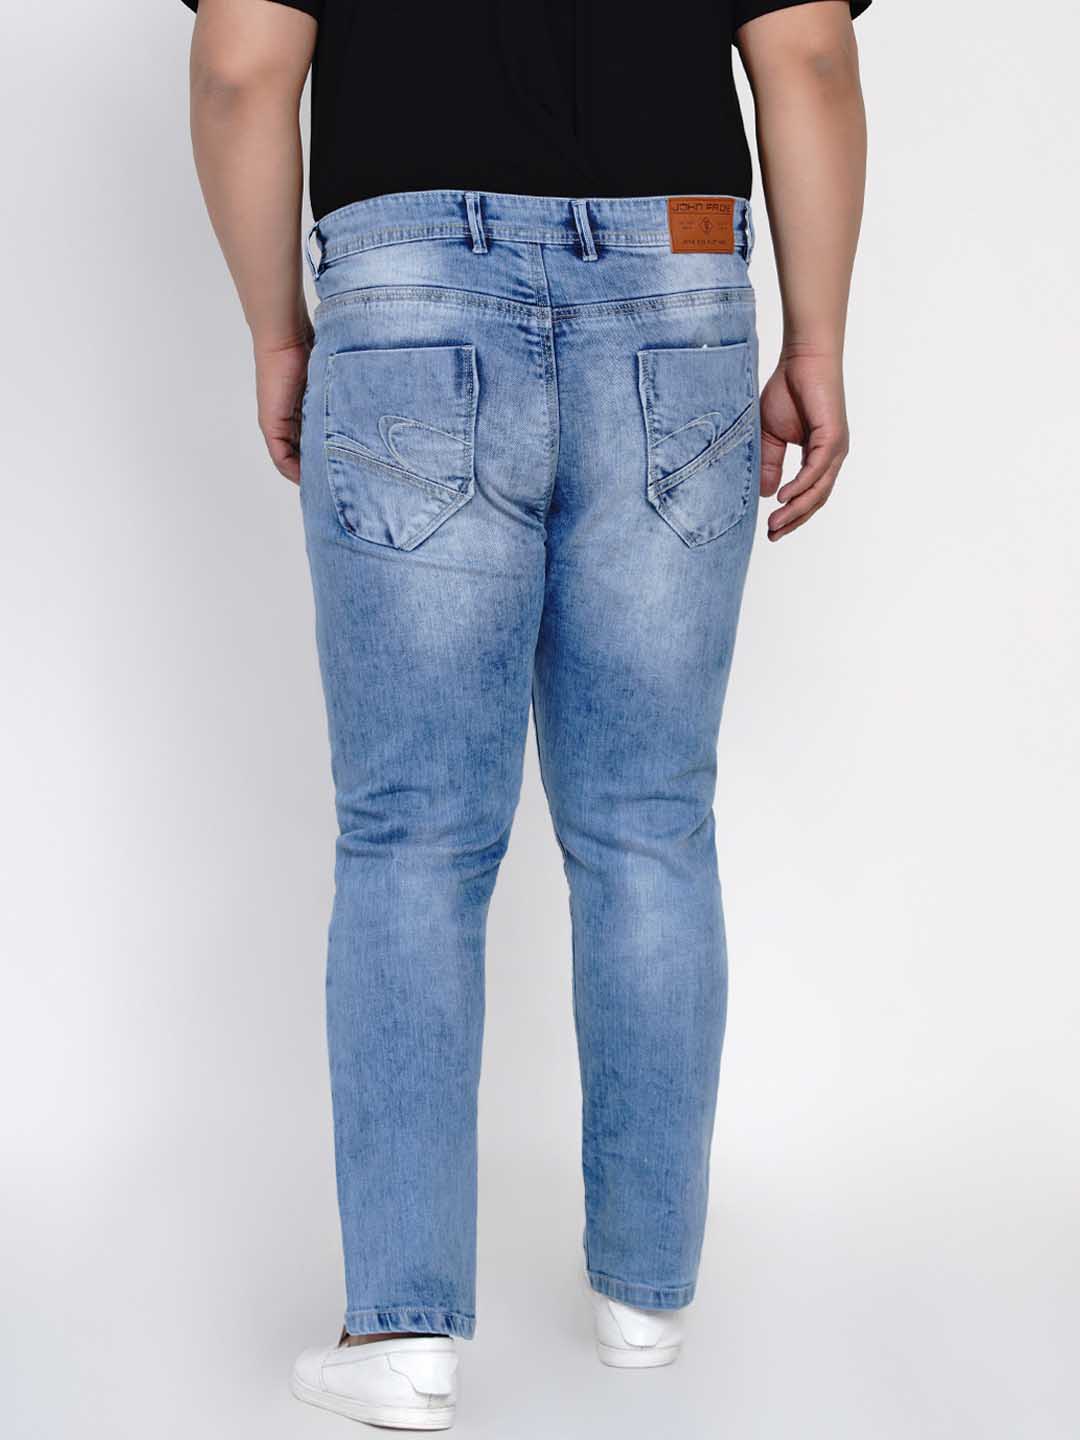 bottomwear/jeans/JPJ12128/jpj12128-4.jpg